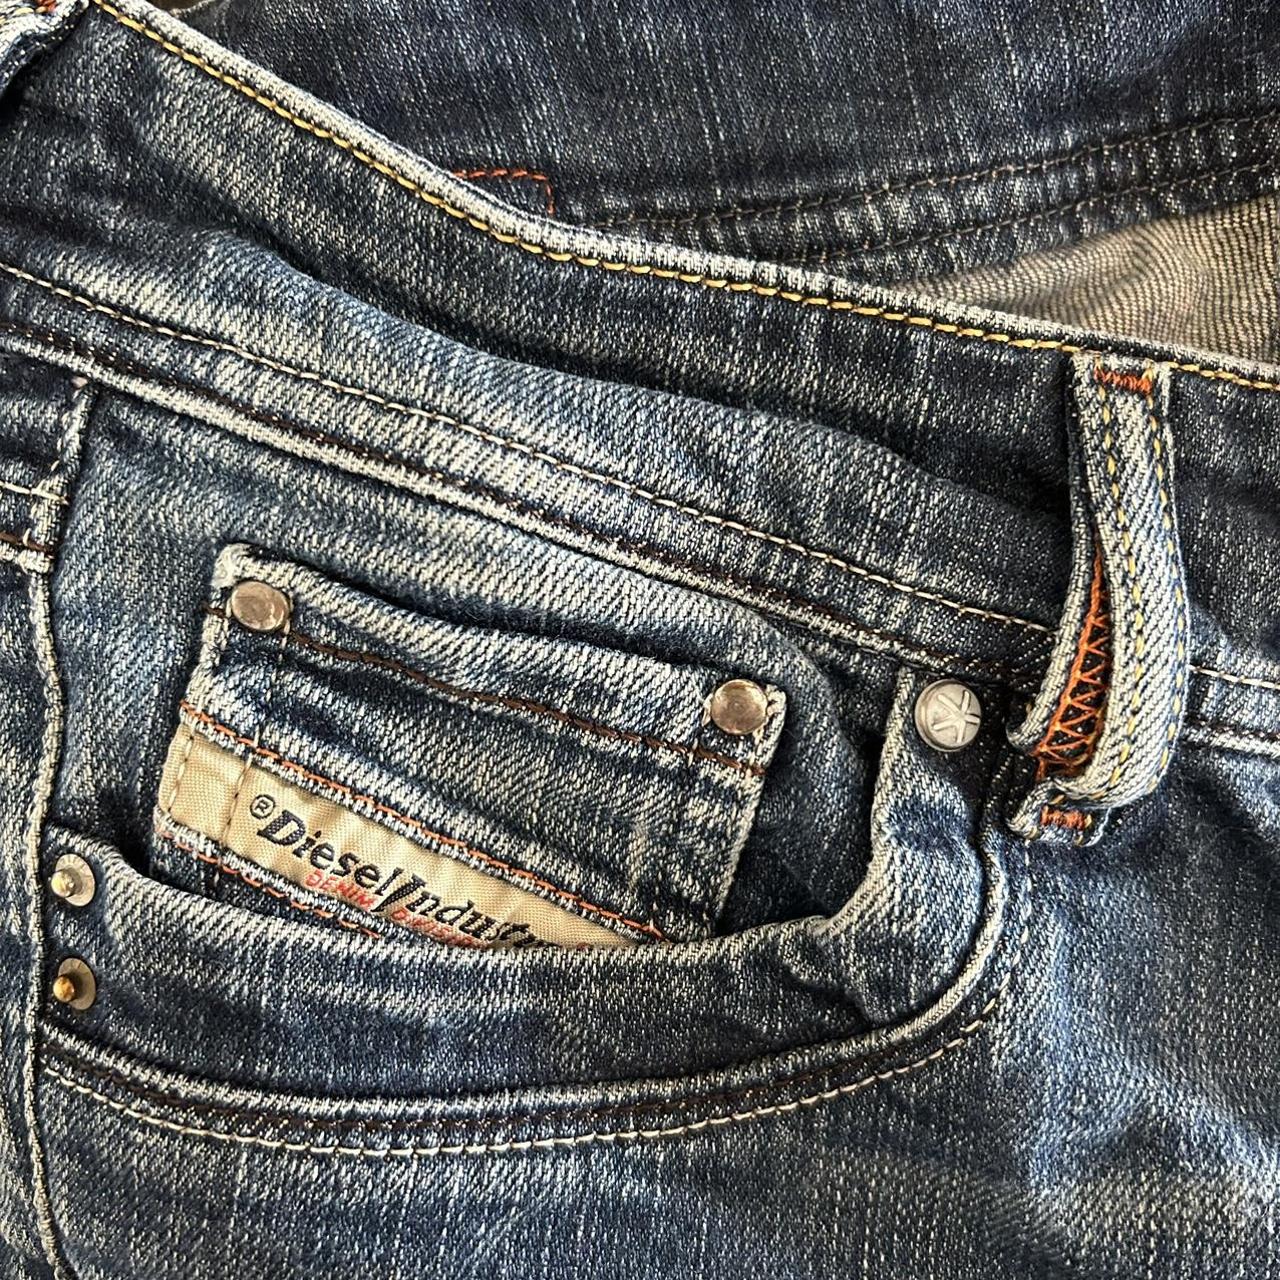 Vintage bootleg low rise diesel jeans that fit well! - Depop